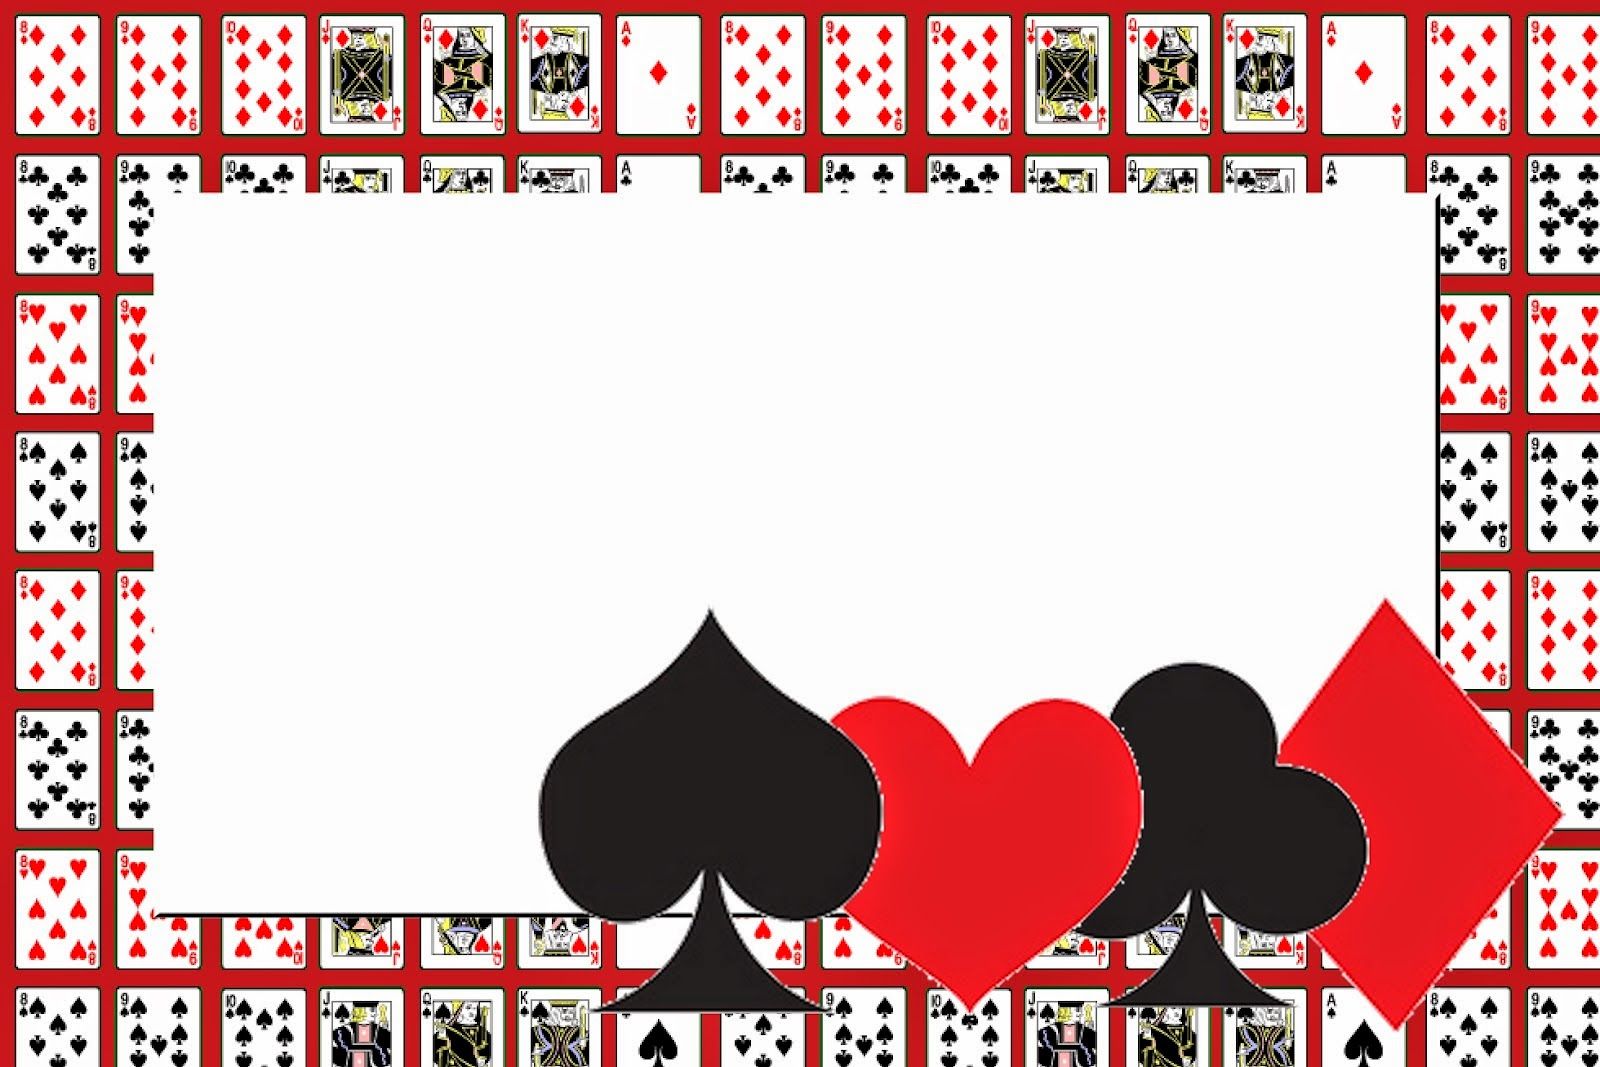 Casino fiesta slot juegos gratuitos 597339